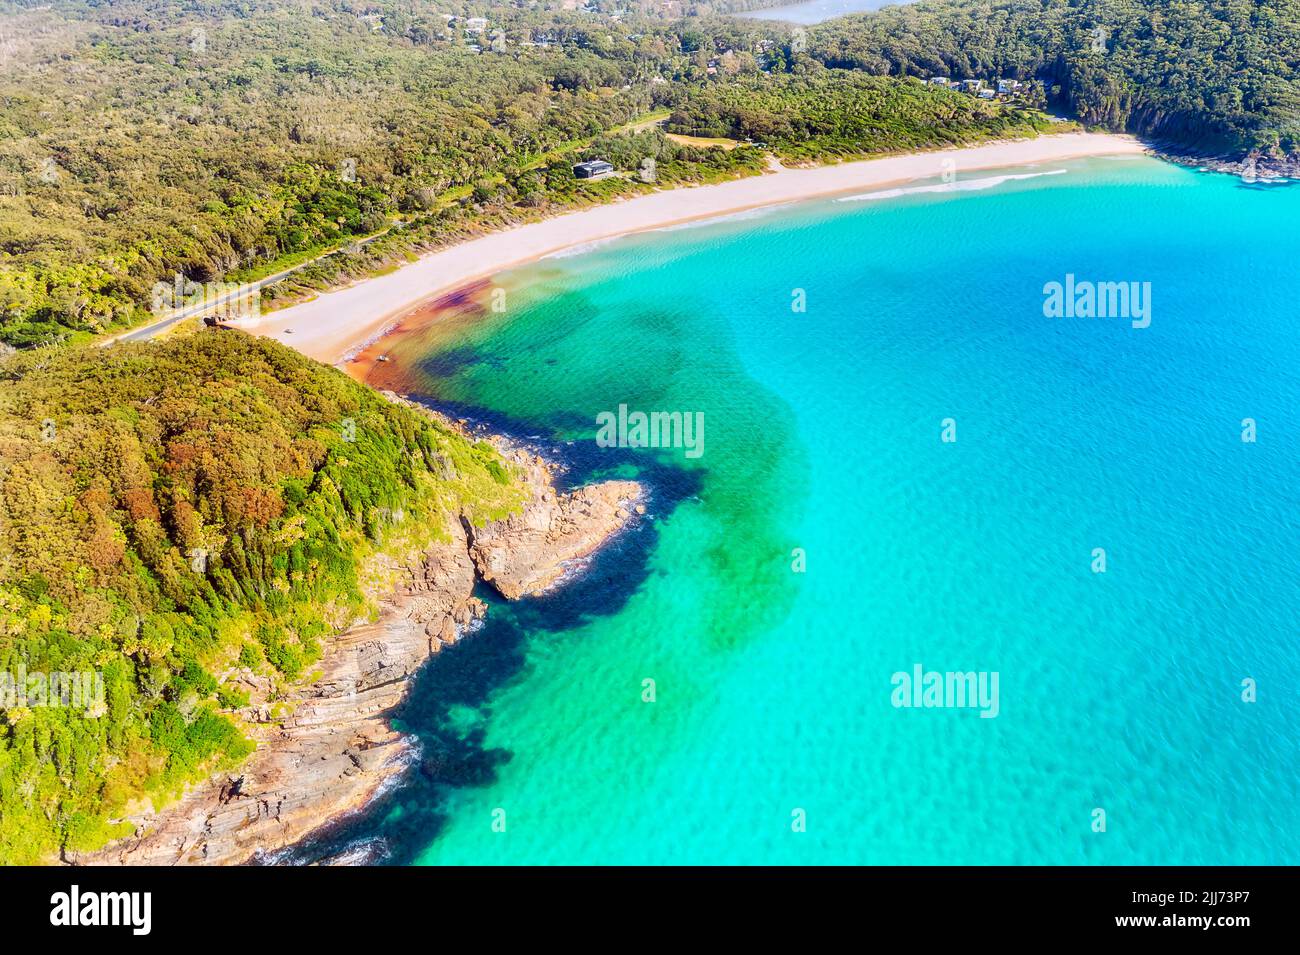 Elizabeth plage et baie près du parc national booti booti sur la côte du Pacifique australien - paysage tropical pittoresque. Banque D'Images